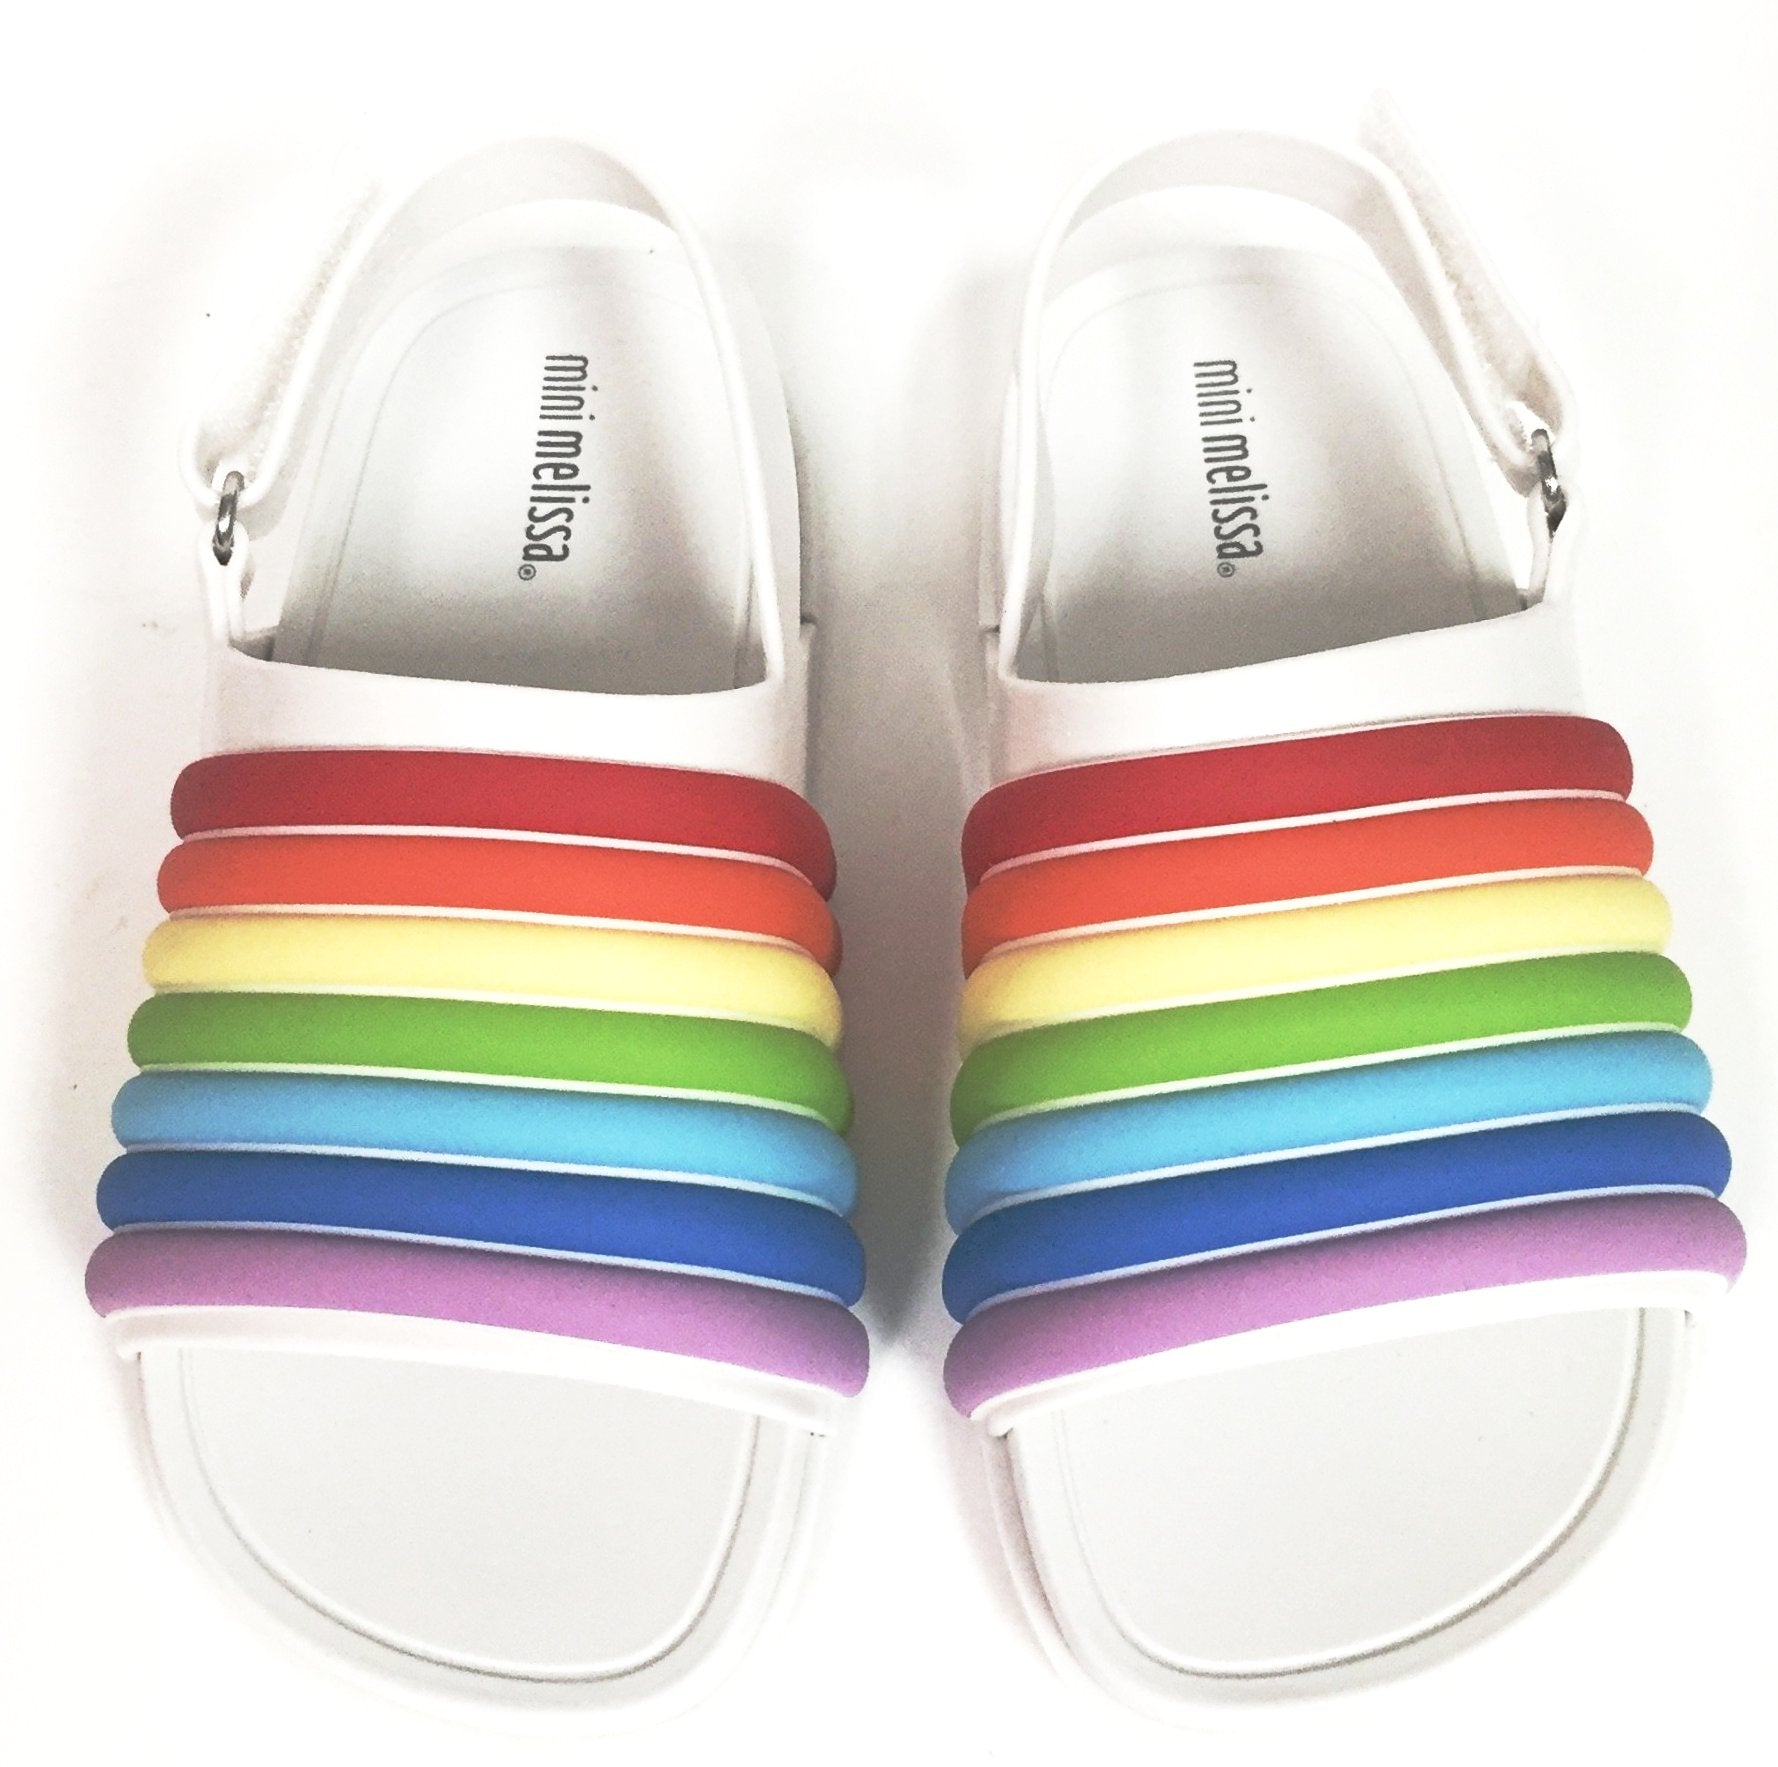 melissa rainbow sandals